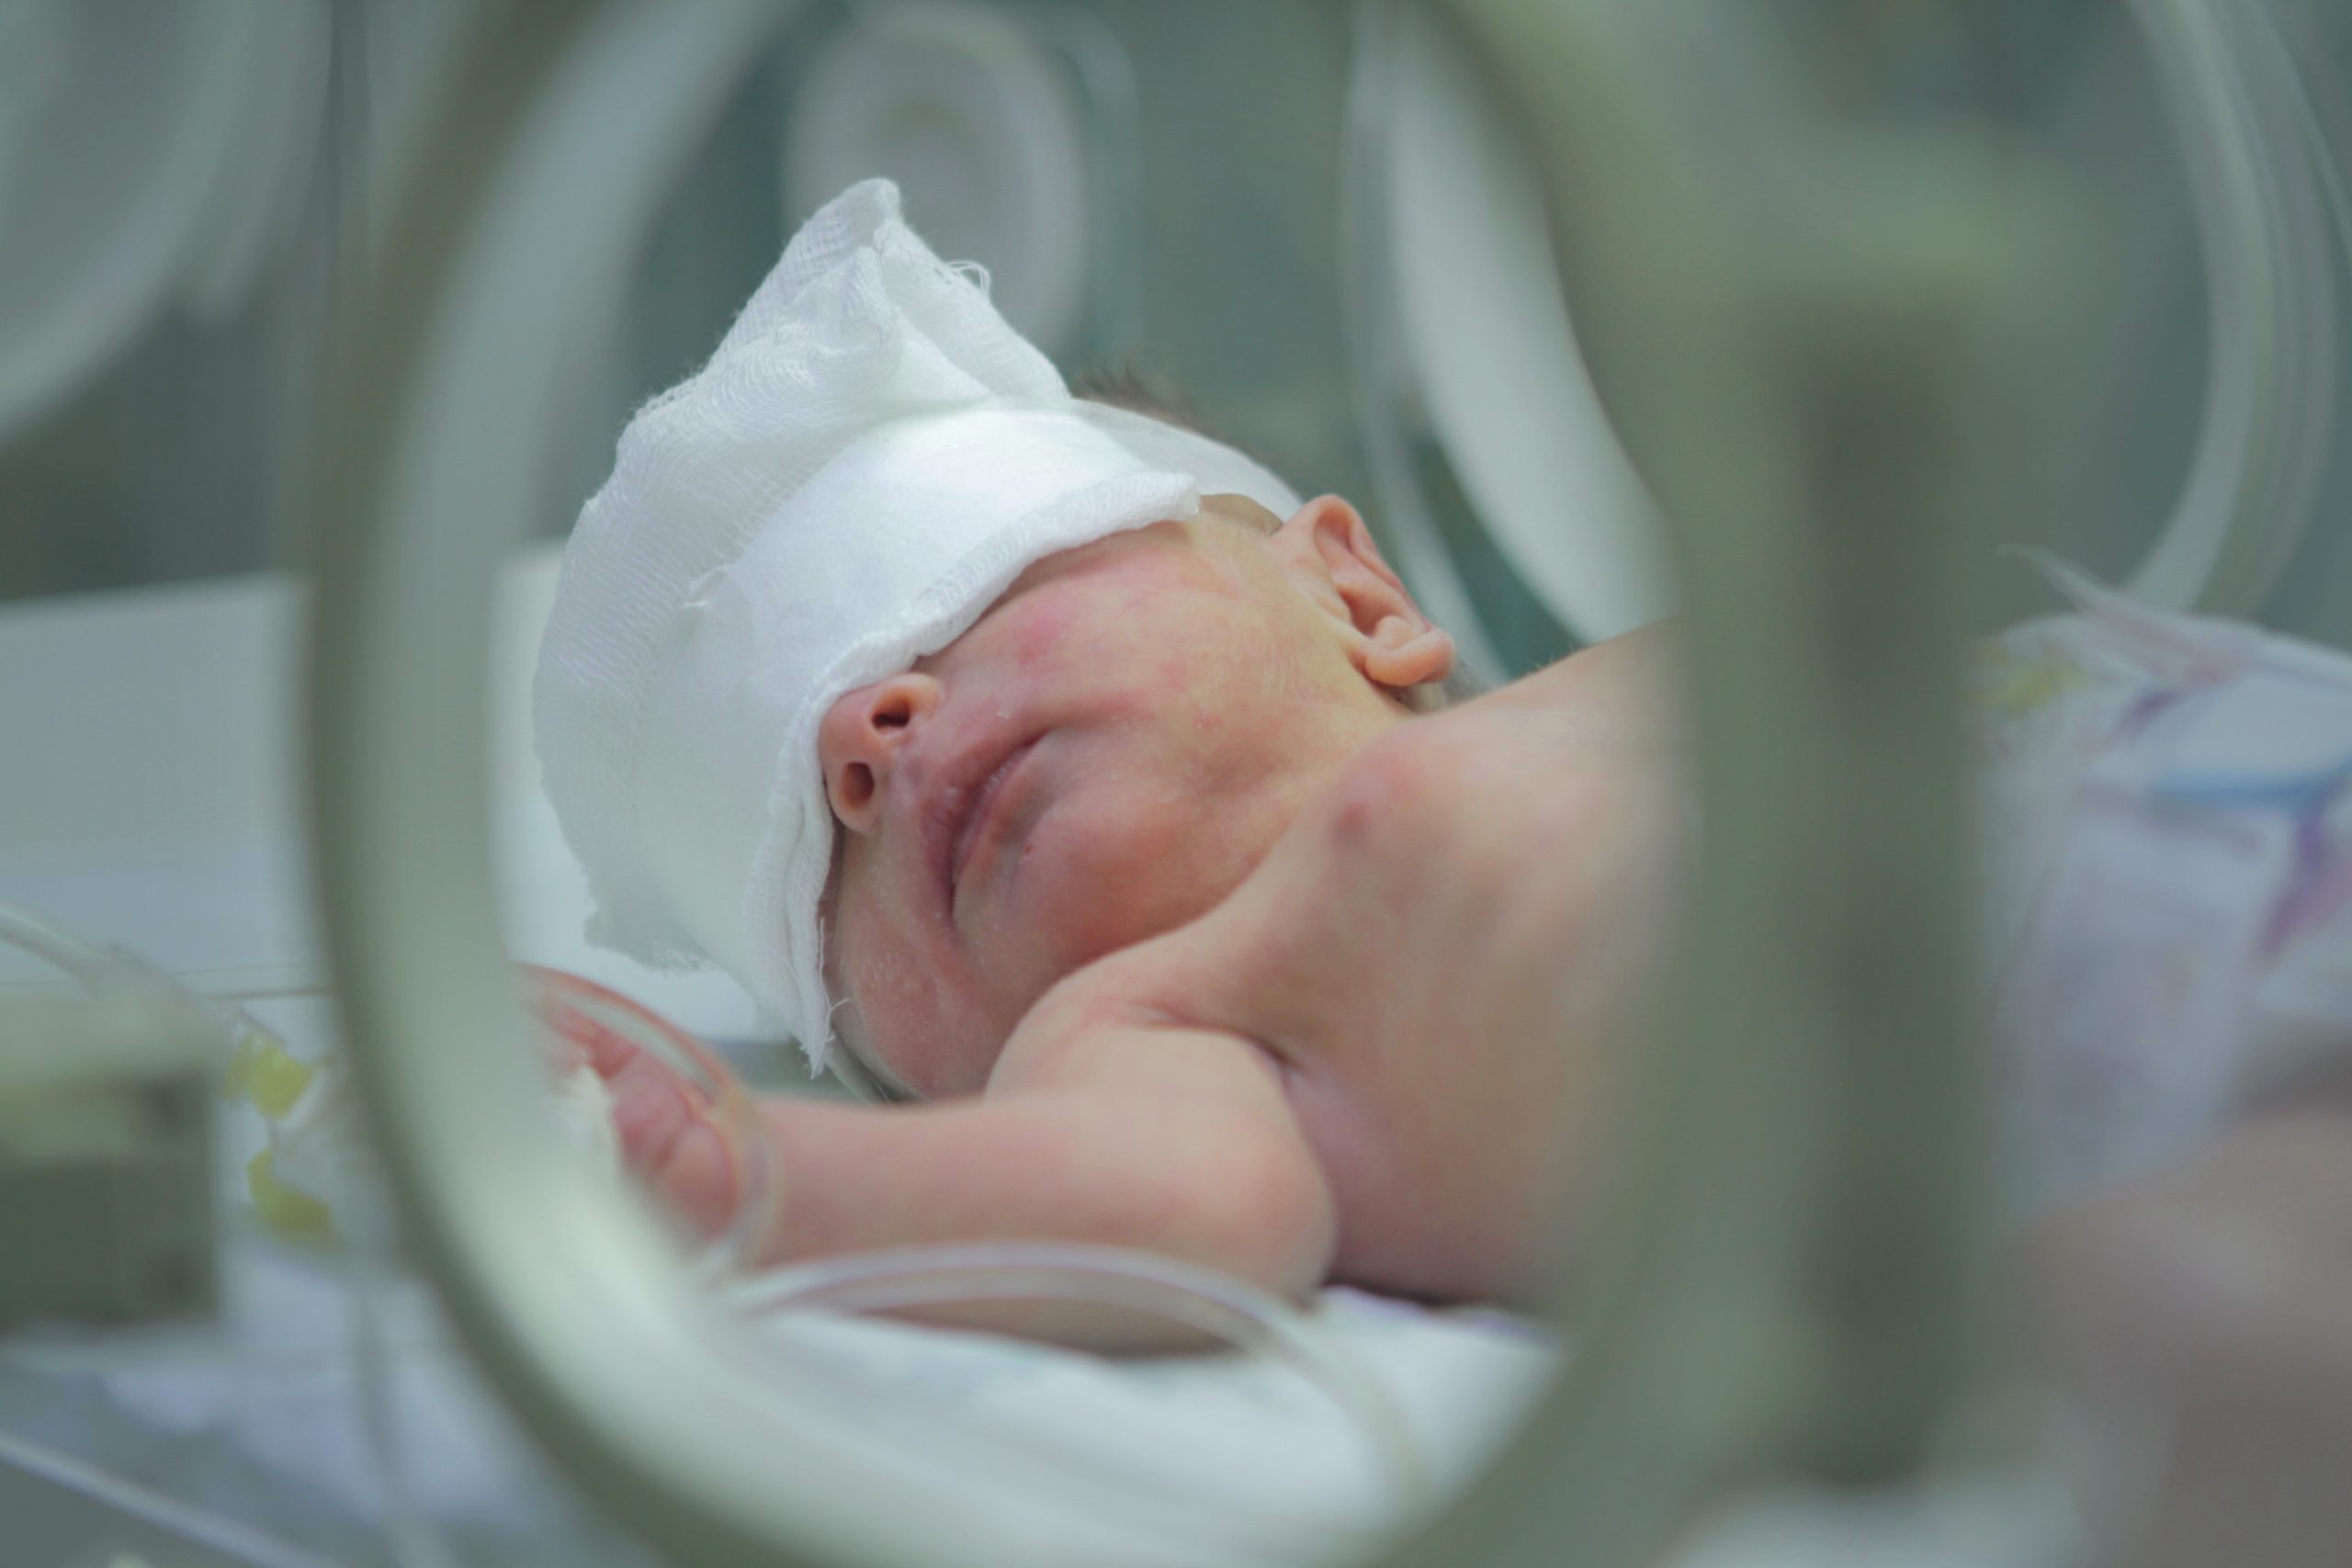 Baby in incubator in Gaza